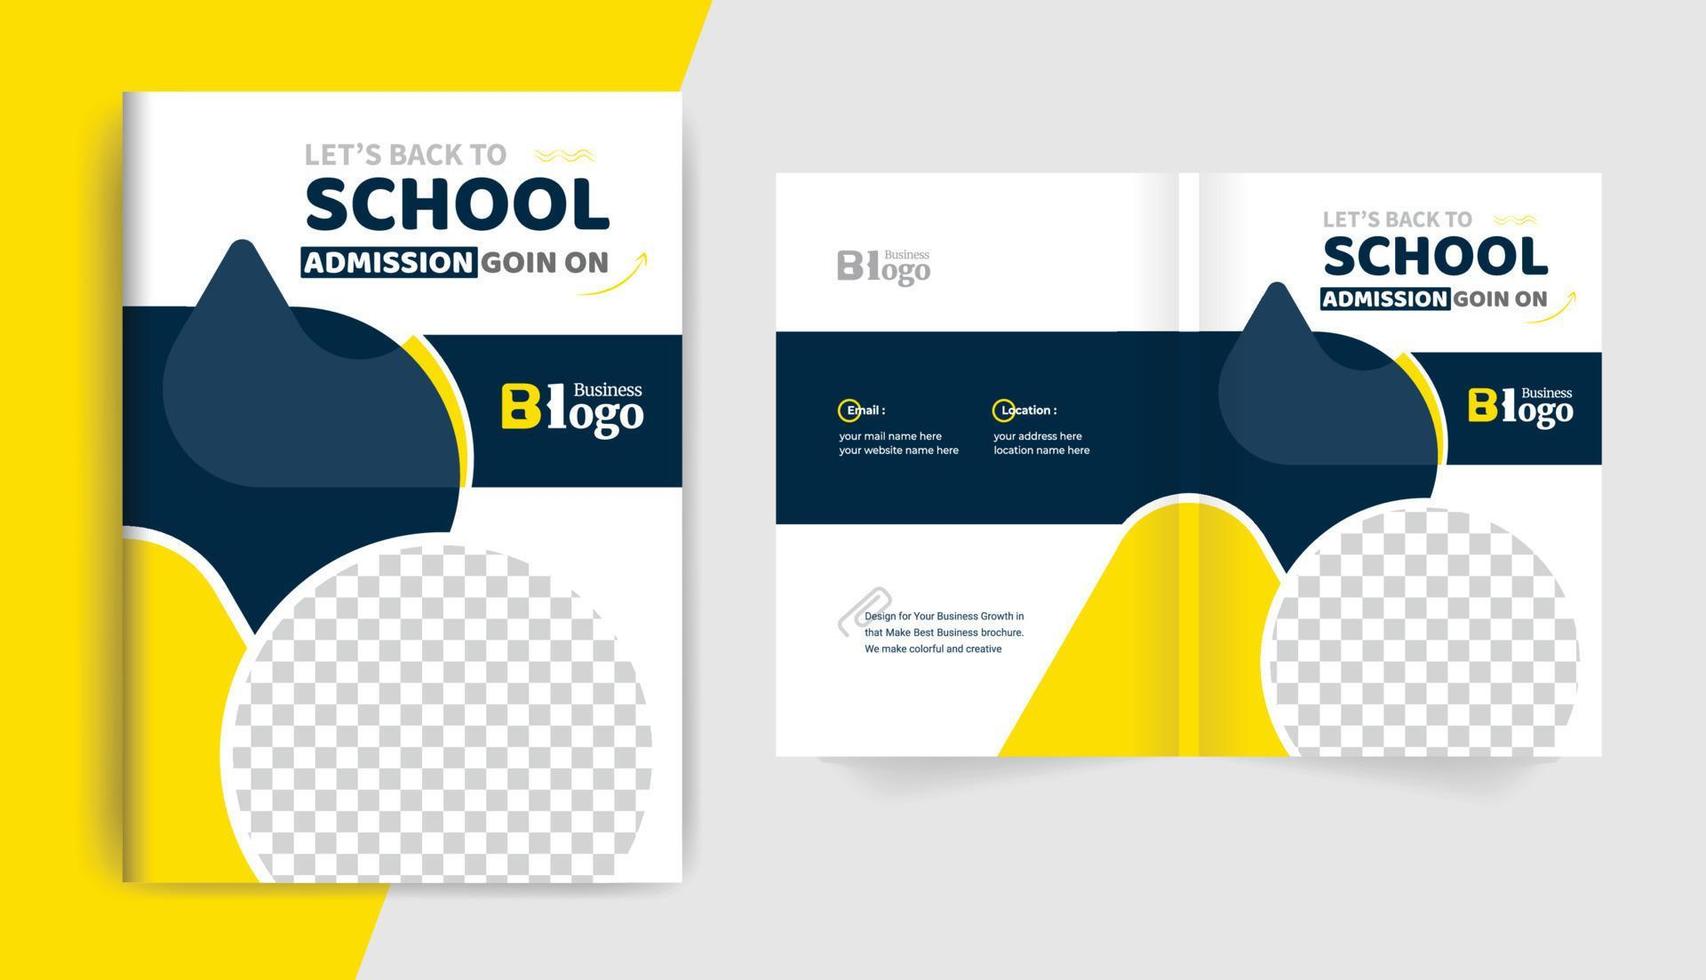 farbenfrohes, modernes Back-to-School-Zulassungsbroschüren-Cover-Layout-Design für Corporate-Business- und Corporate-Use-Themen vektor